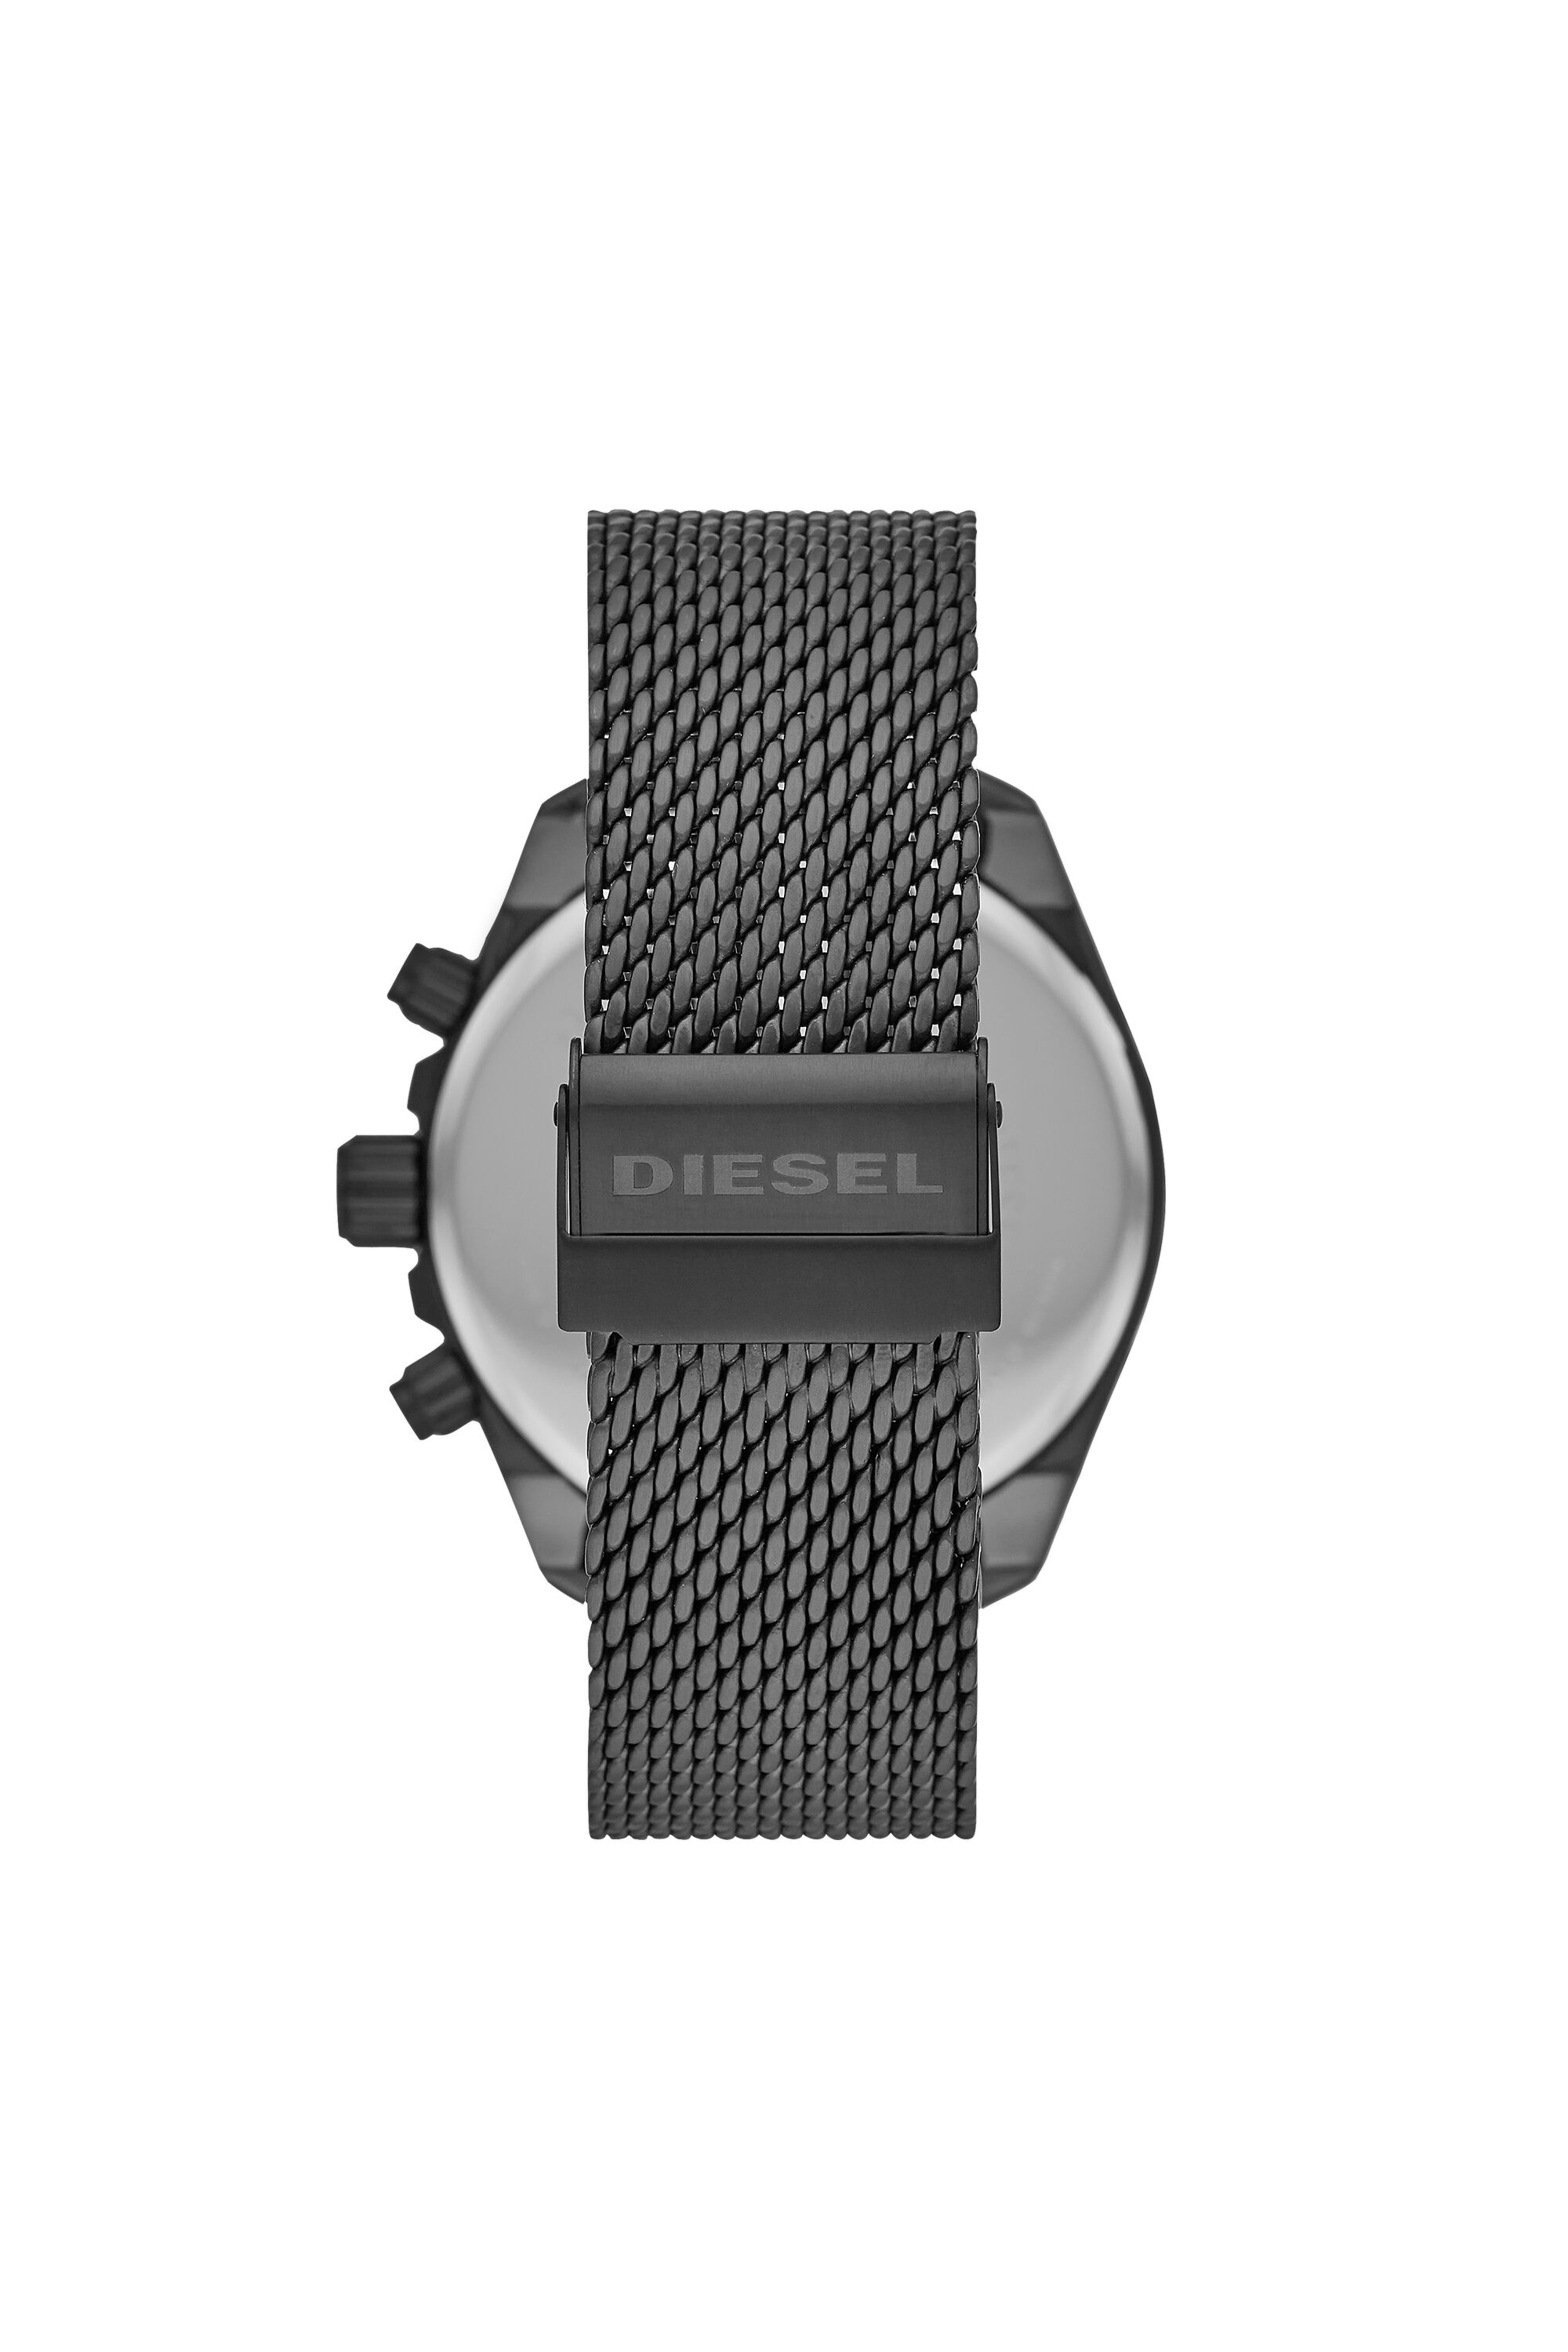 Diesel - DZ4528, Grey - Image 2